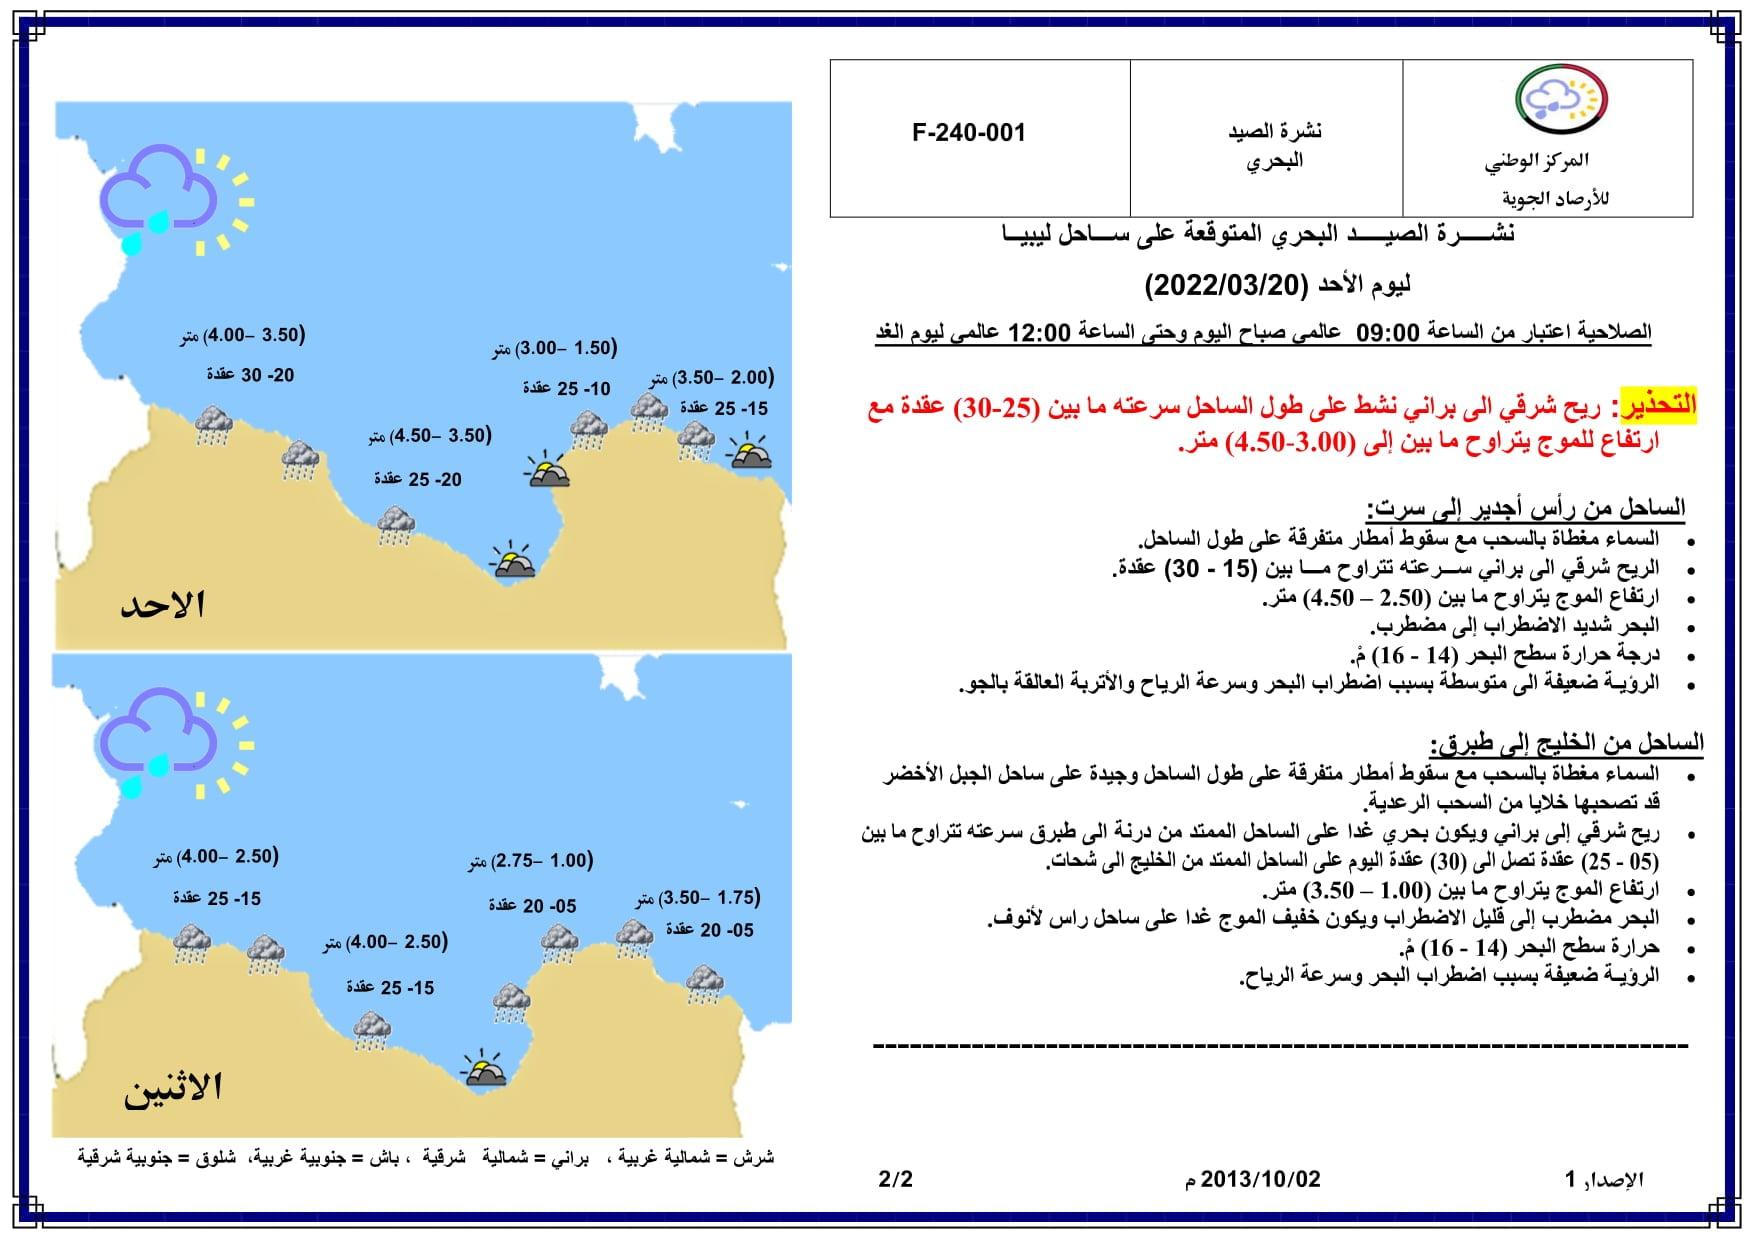 الأجواء متقلبة مصحوبة برياح نشطة وانخفاض ملحوظ في درجات الحرارة علي أغلب مناطق ليبيا